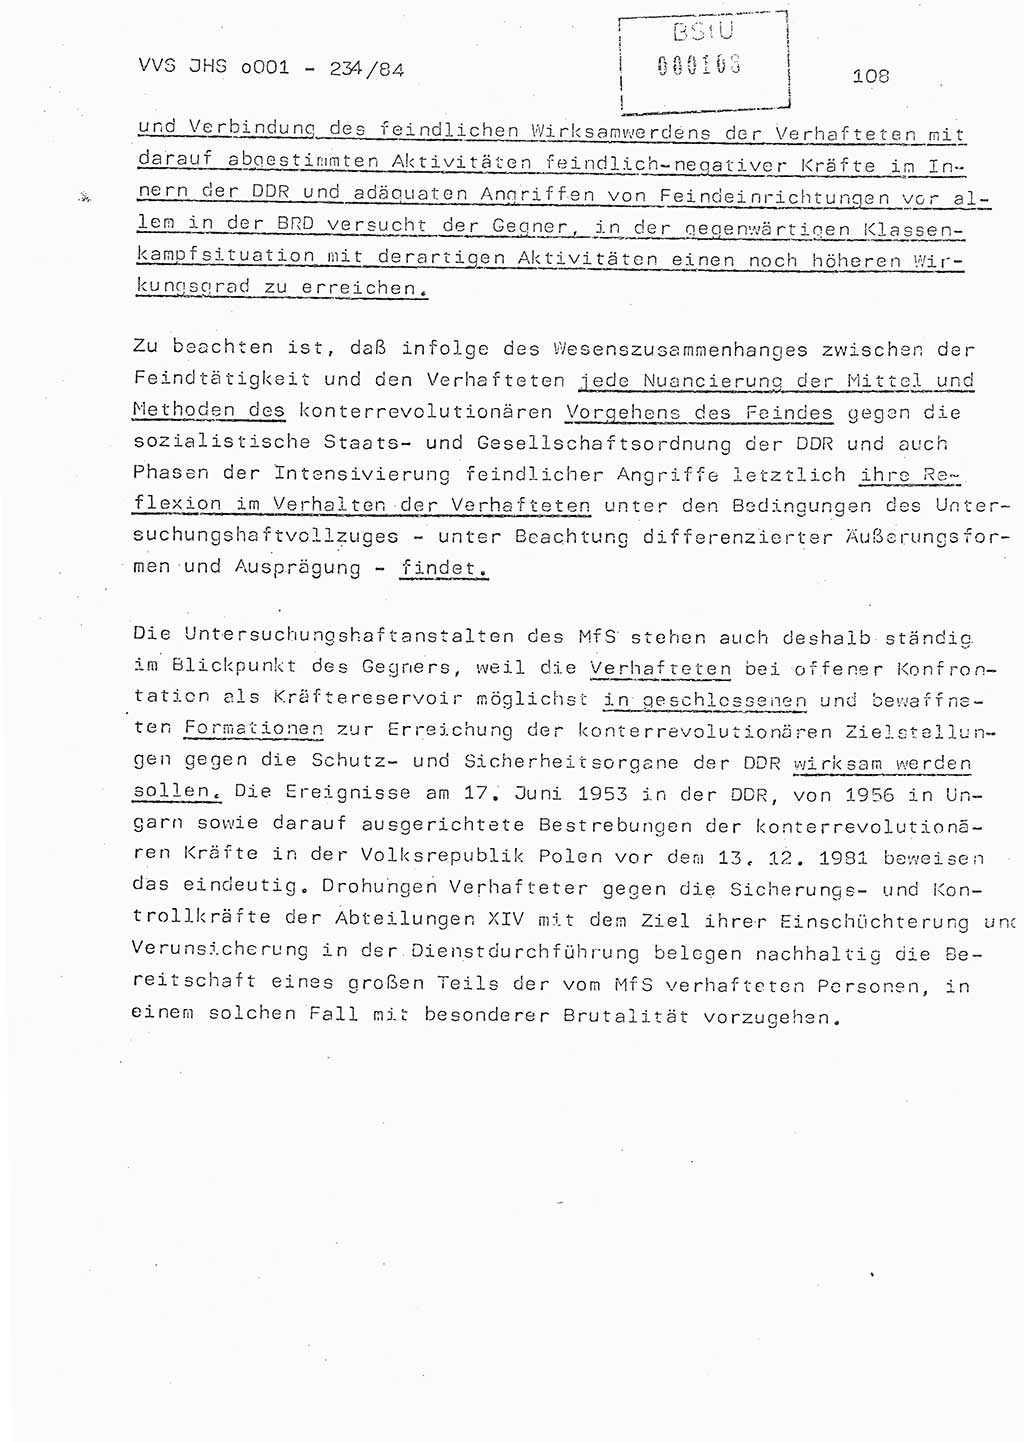 Dissertation Oberst Siegfried Rataizick (Abt. ⅩⅣ), Oberstleutnant Volkmar Heinz (Abt. ⅩⅣ), Oberstleutnant Werner Stein (HA Ⅸ), Hauptmann Heinz Conrad (JHS), Ministerium für Staatssicherheit (MfS) [Deutsche Demokratische Republik (DDR)], Juristische Hochschule (JHS), Vertrauliche Verschlußsache (VVS) o001-234/84, Potsdam 1984, Seite 108 (Diss. MfS DDR JHS VVS o001-234/84 1984, S. 108)